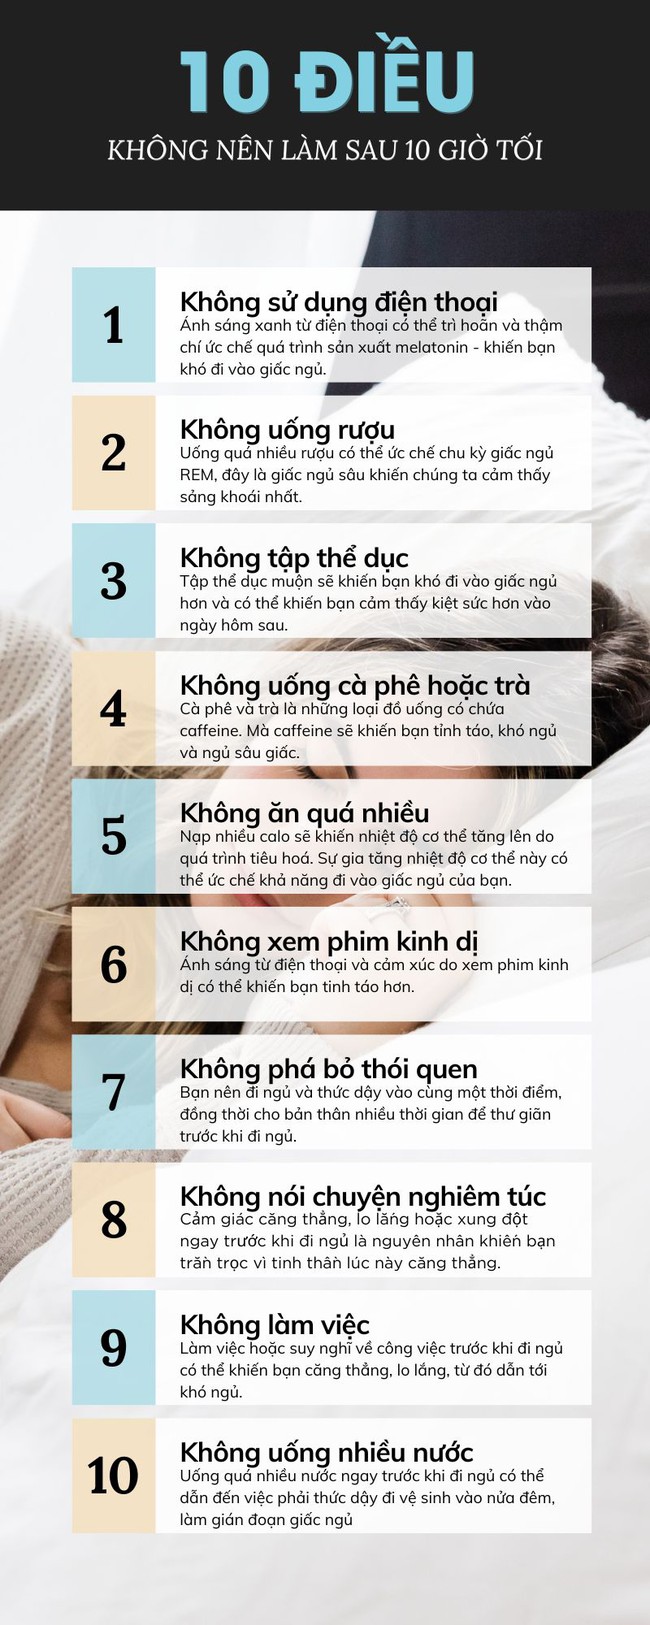 10 điều bạn không nên làm sau 10 giờ tối để tránh ảnh hưởng đến giấc ngủ - Ảnh 6.